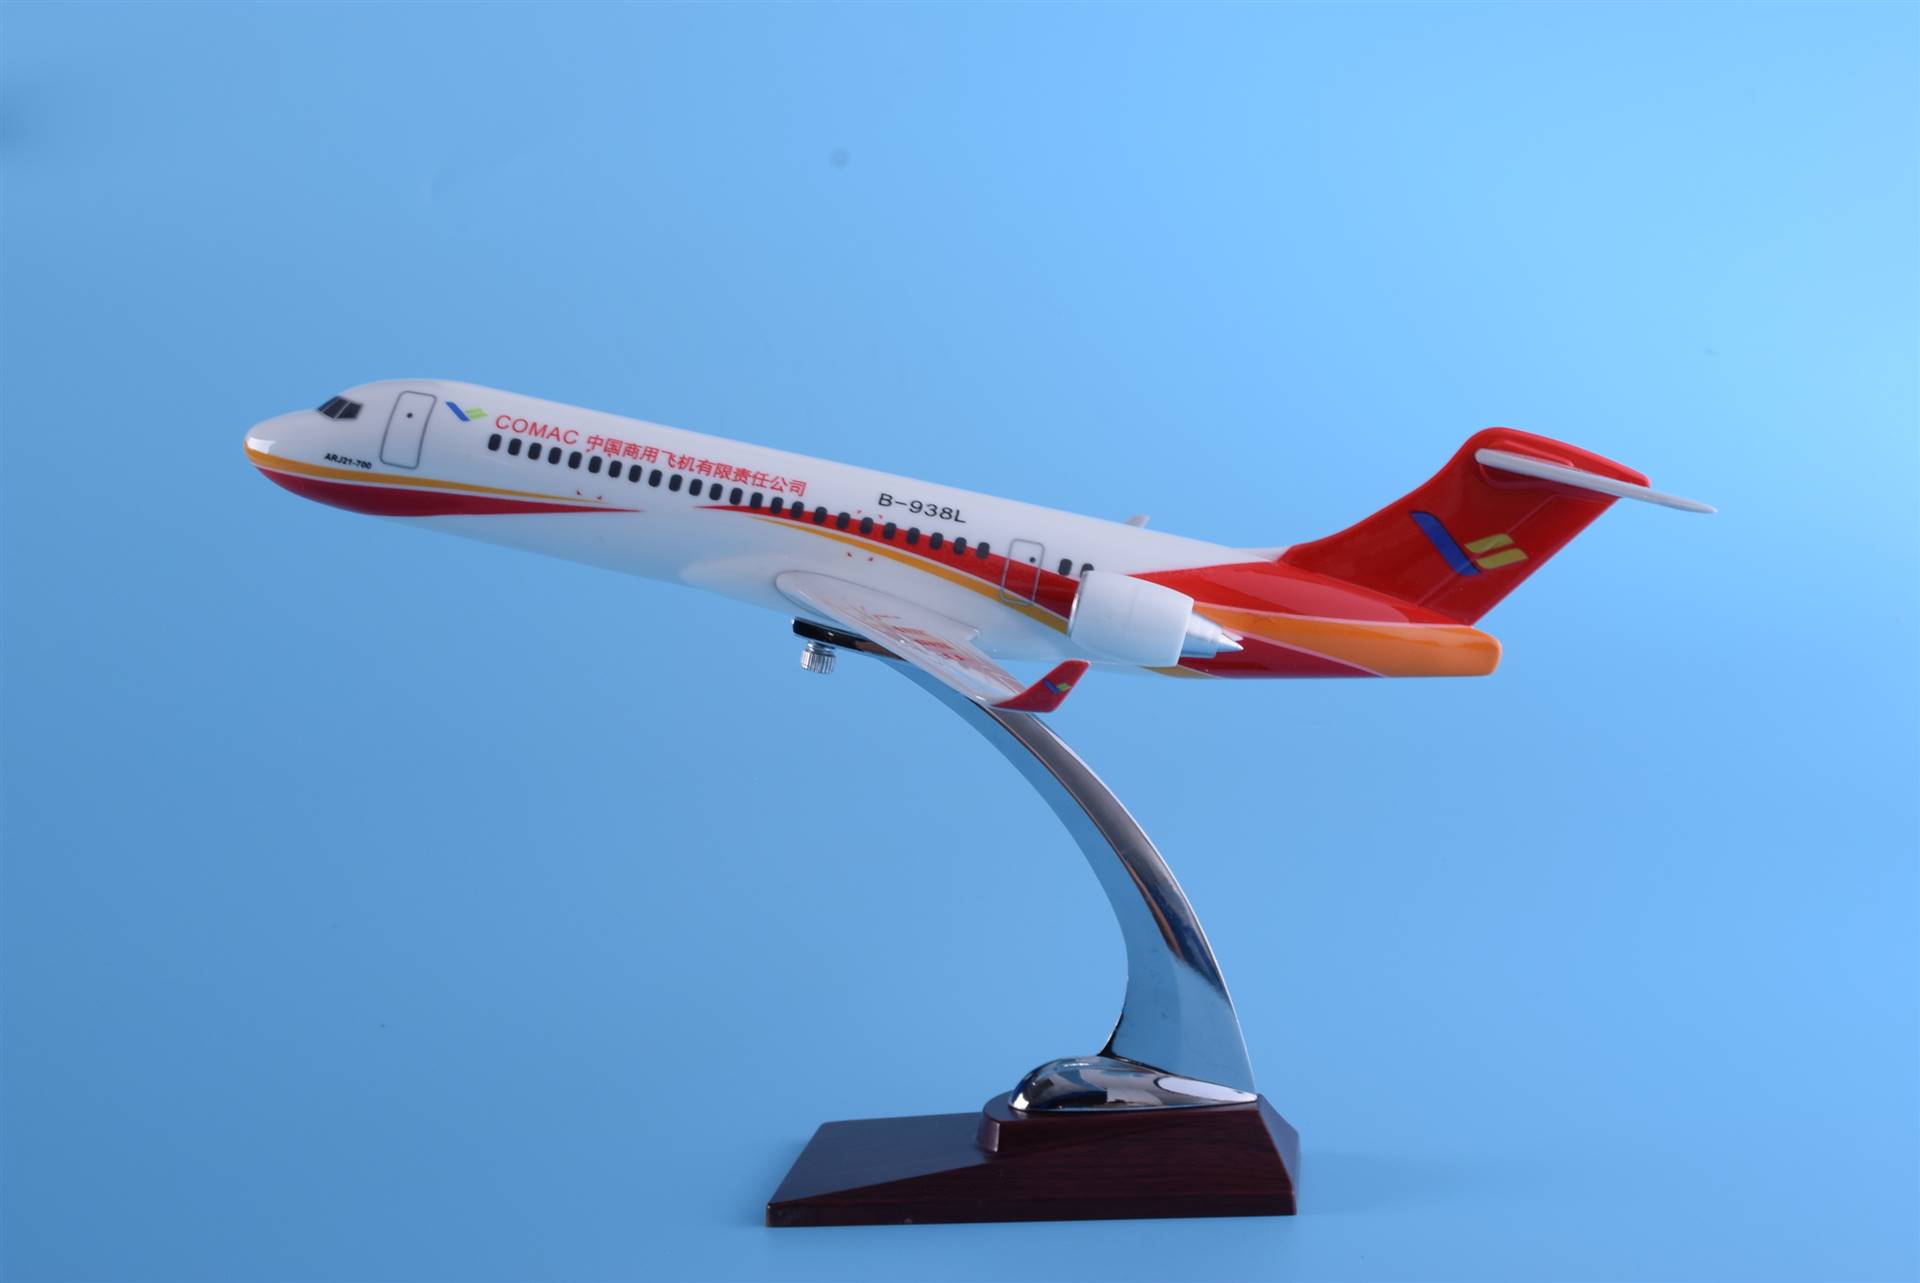 飞机模型图片航空模型厂家arj-21中国商飞树脂模型定做航空用品